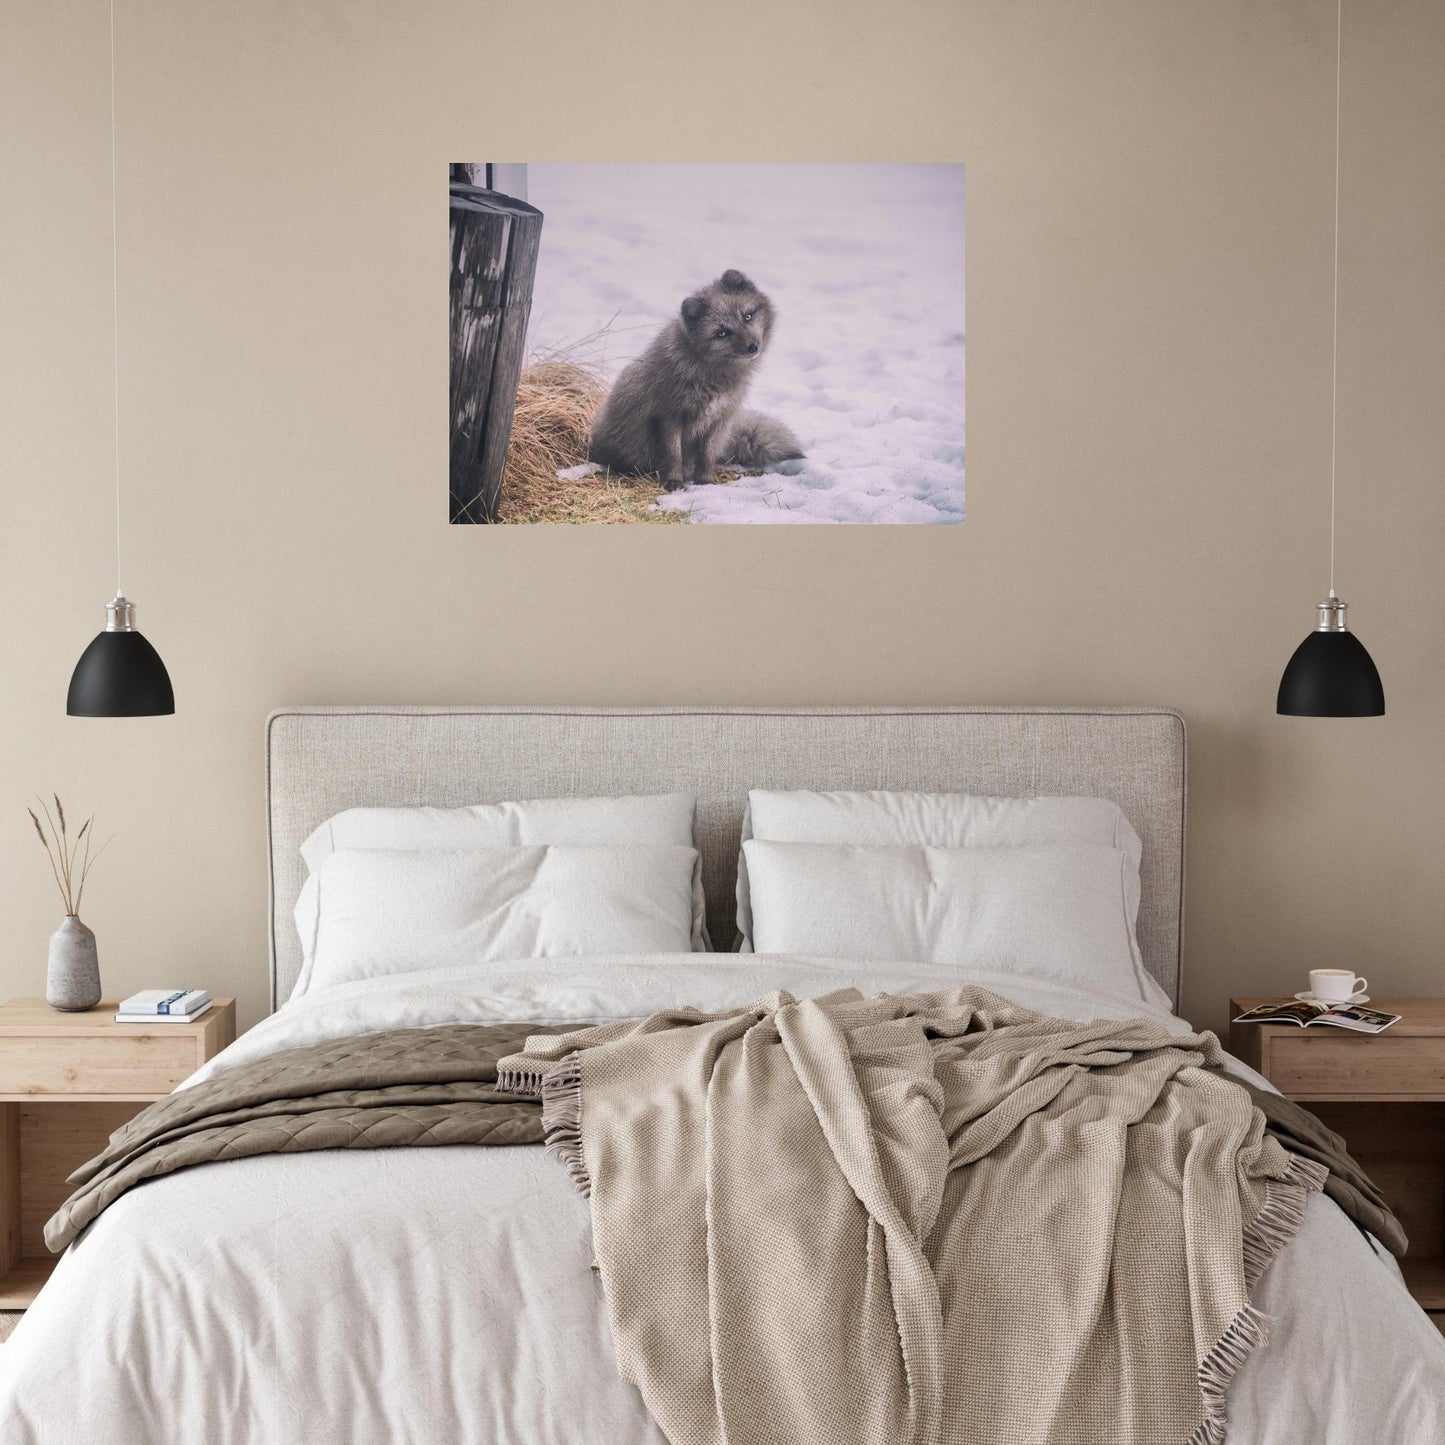 Vente Photo d'un renard gris dans la neige - Tableau photo alu montagne